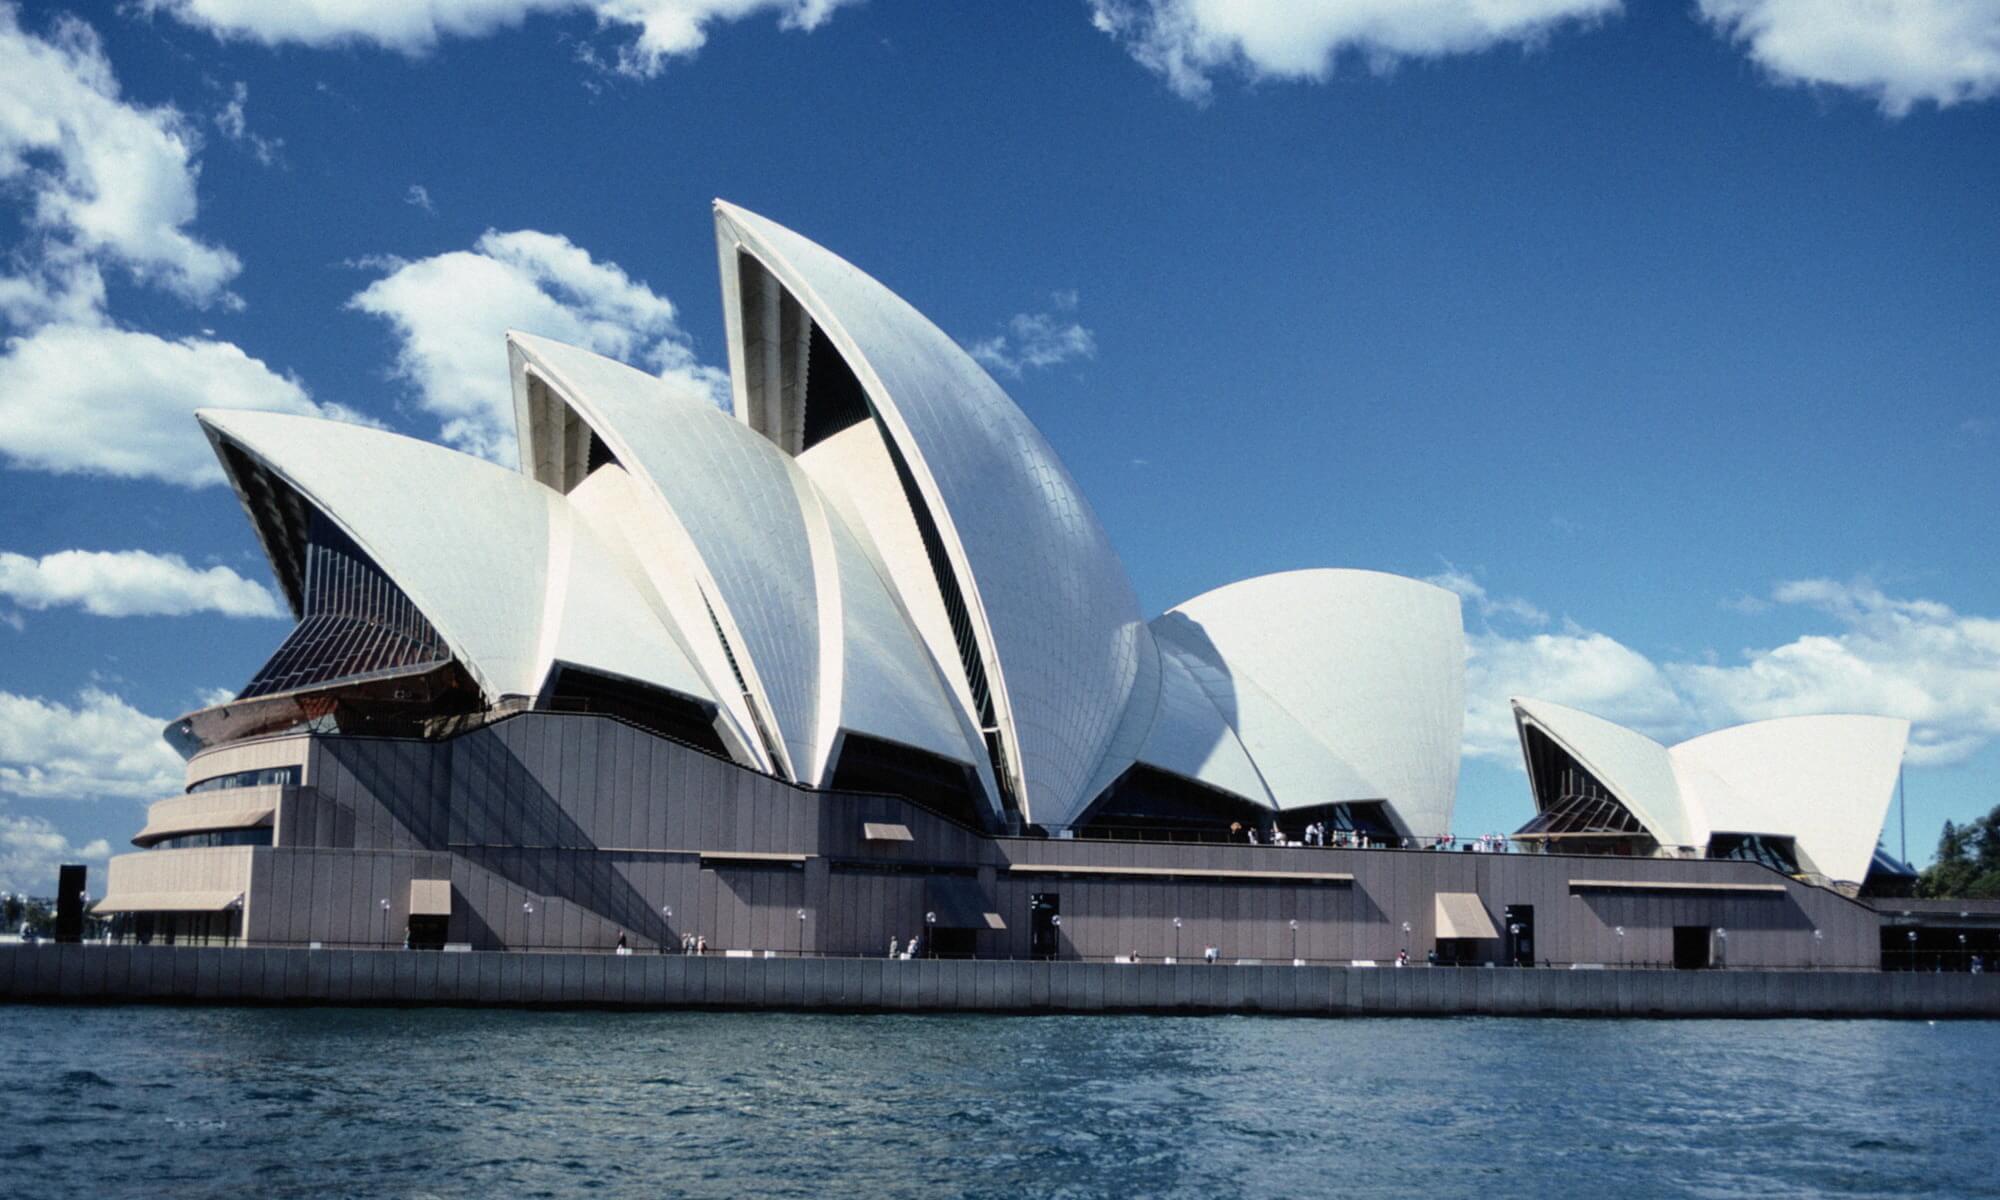 Sydney Opera House, Sydney, Australia